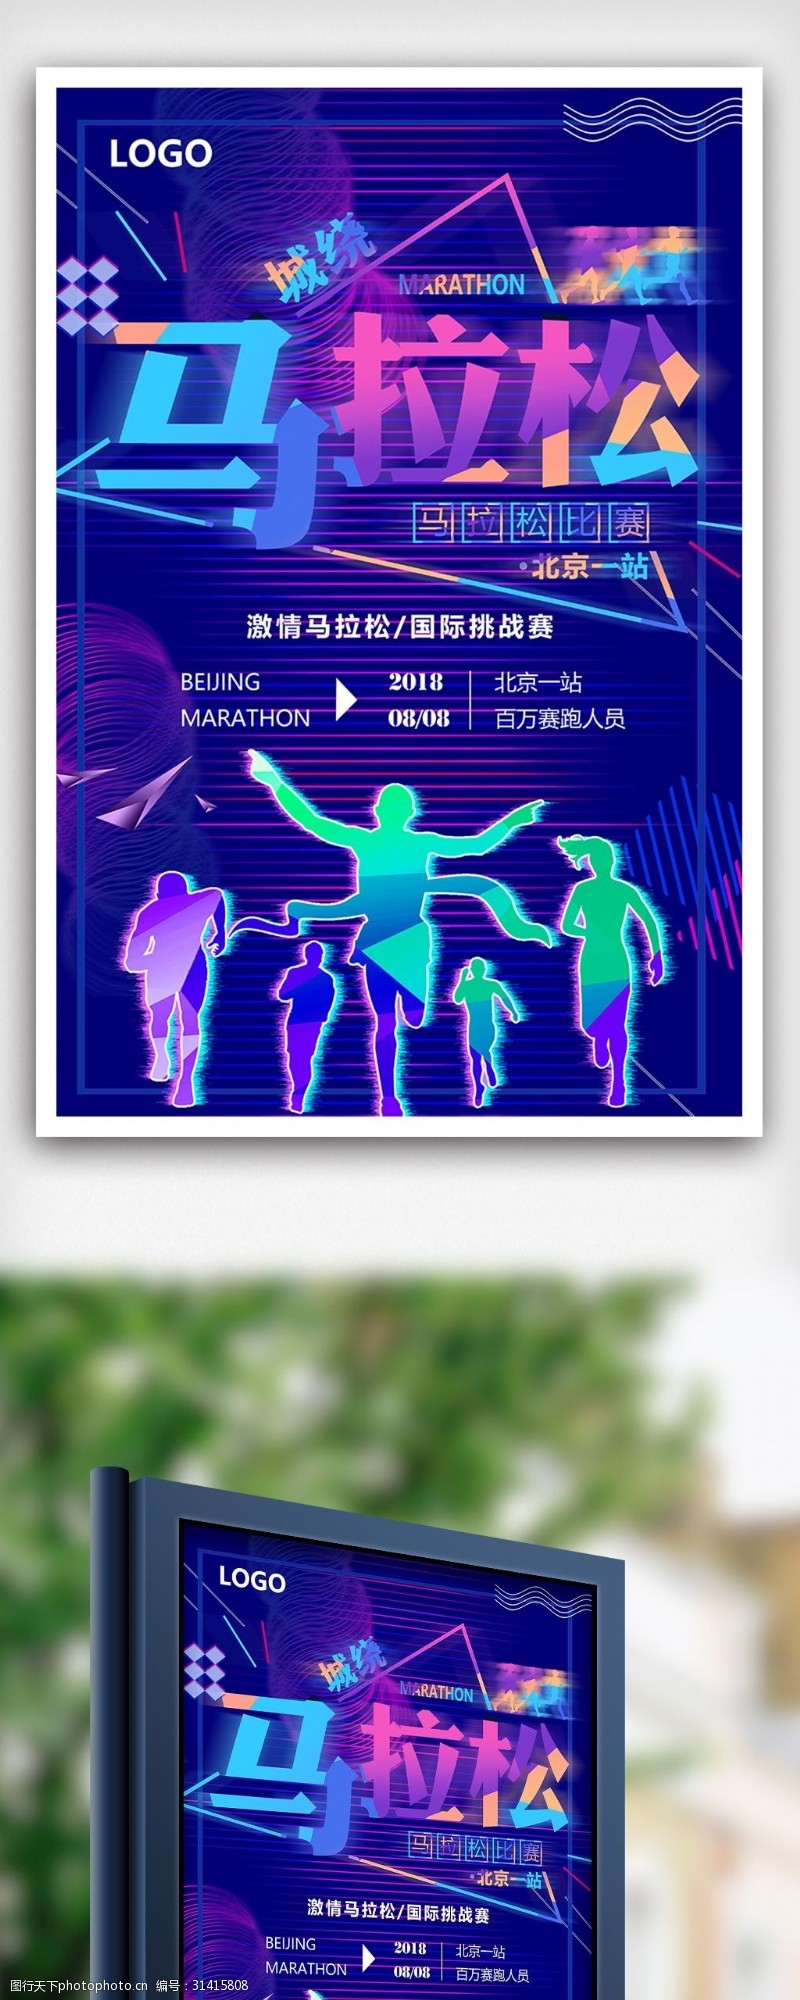 宝马模板下载炫彩时尚马拉松比赛体育运动海报